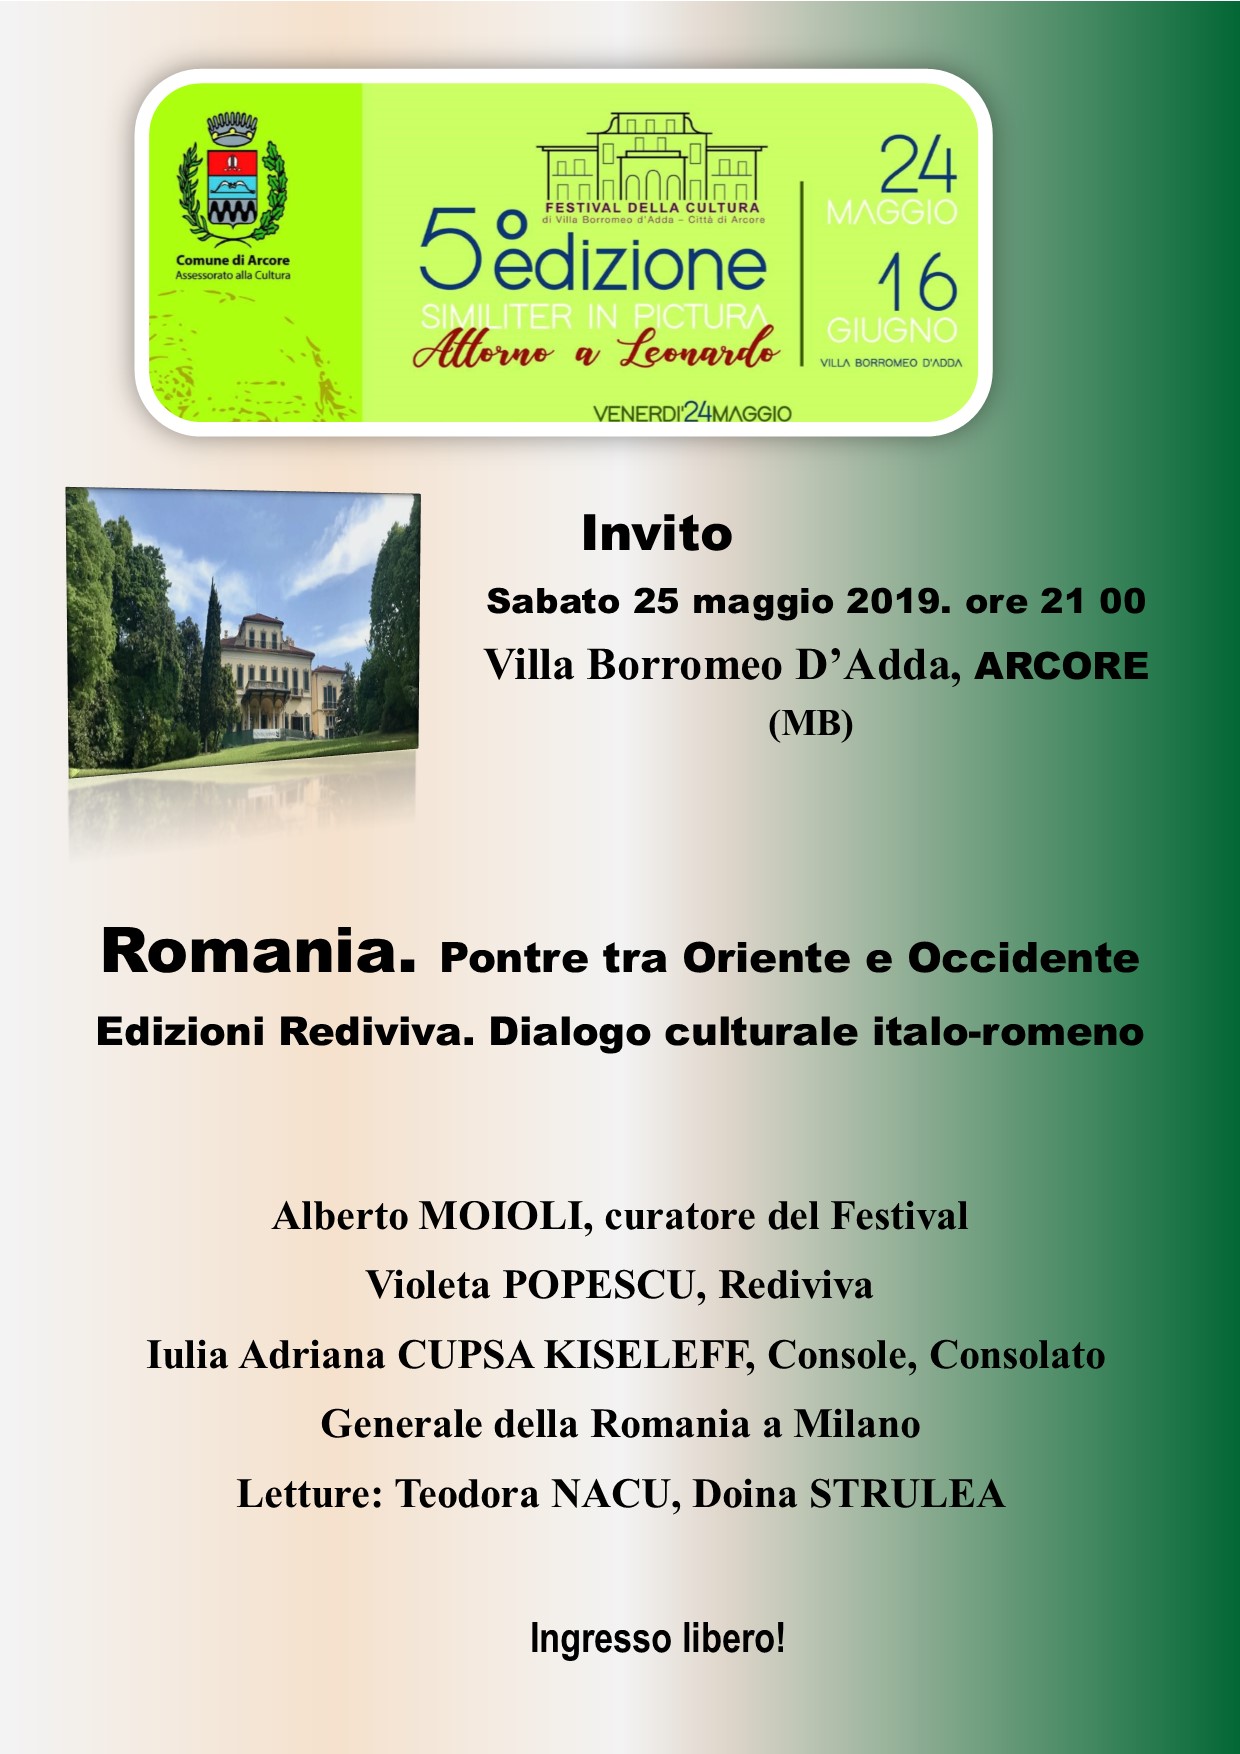 Comunicat editura Rediviva. Prezență românească la Festivalul Culturii din Arcore – Monza Brianza